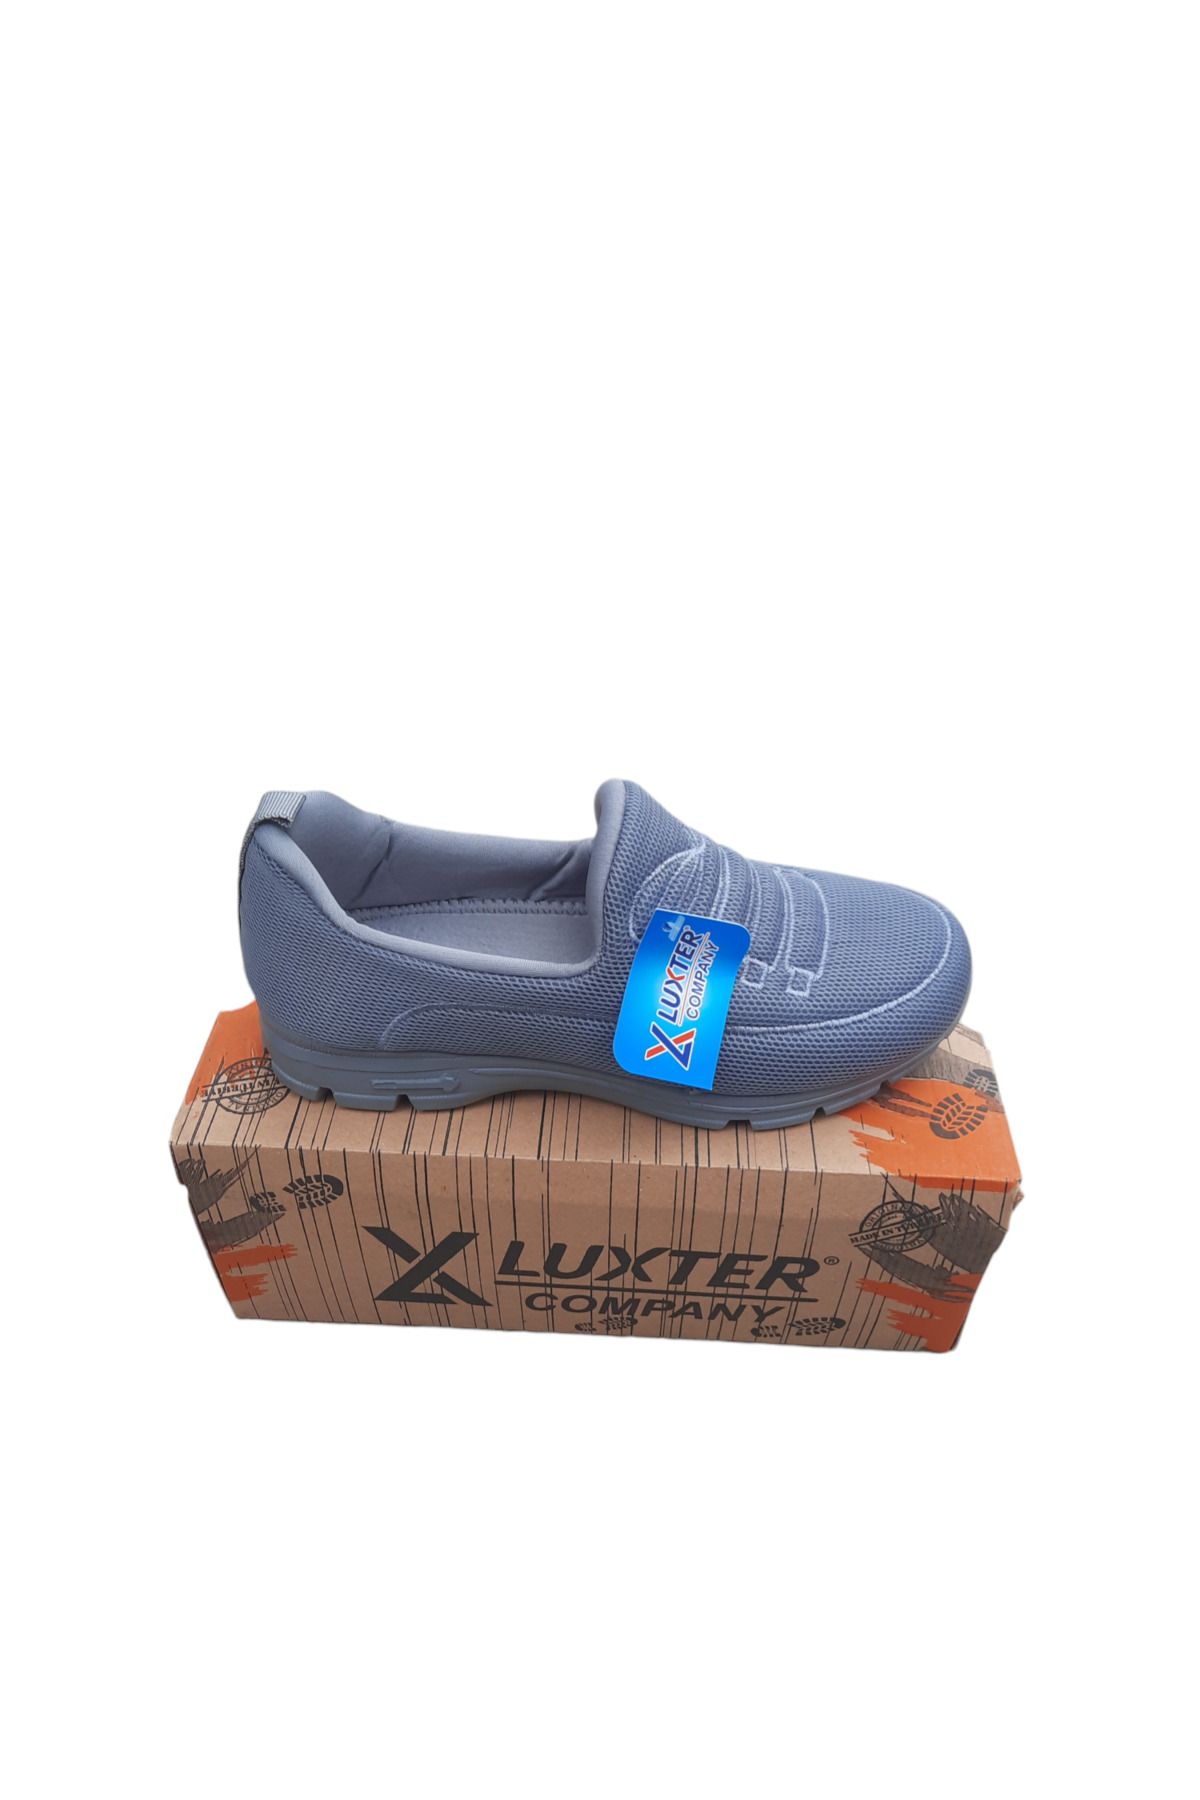 LUXTER Company esnek,kaydirmaz spor ayakkabı